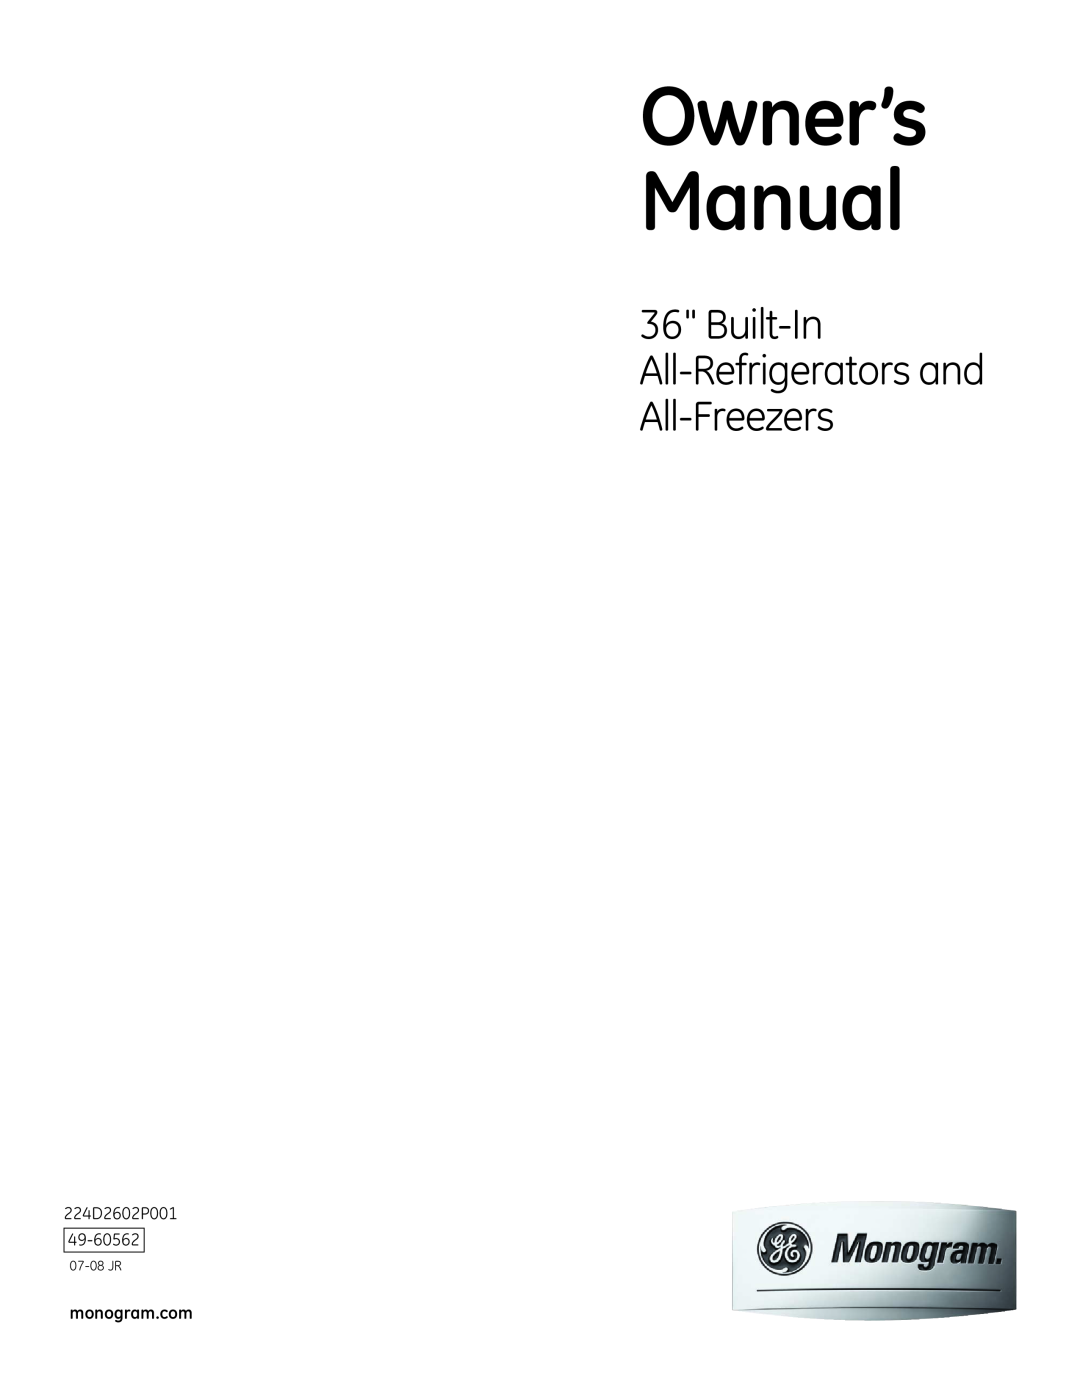 GE Monogram owner manual Built-In All-Refrigerators and All-Freezers, monogram.com, 07-08 JR 